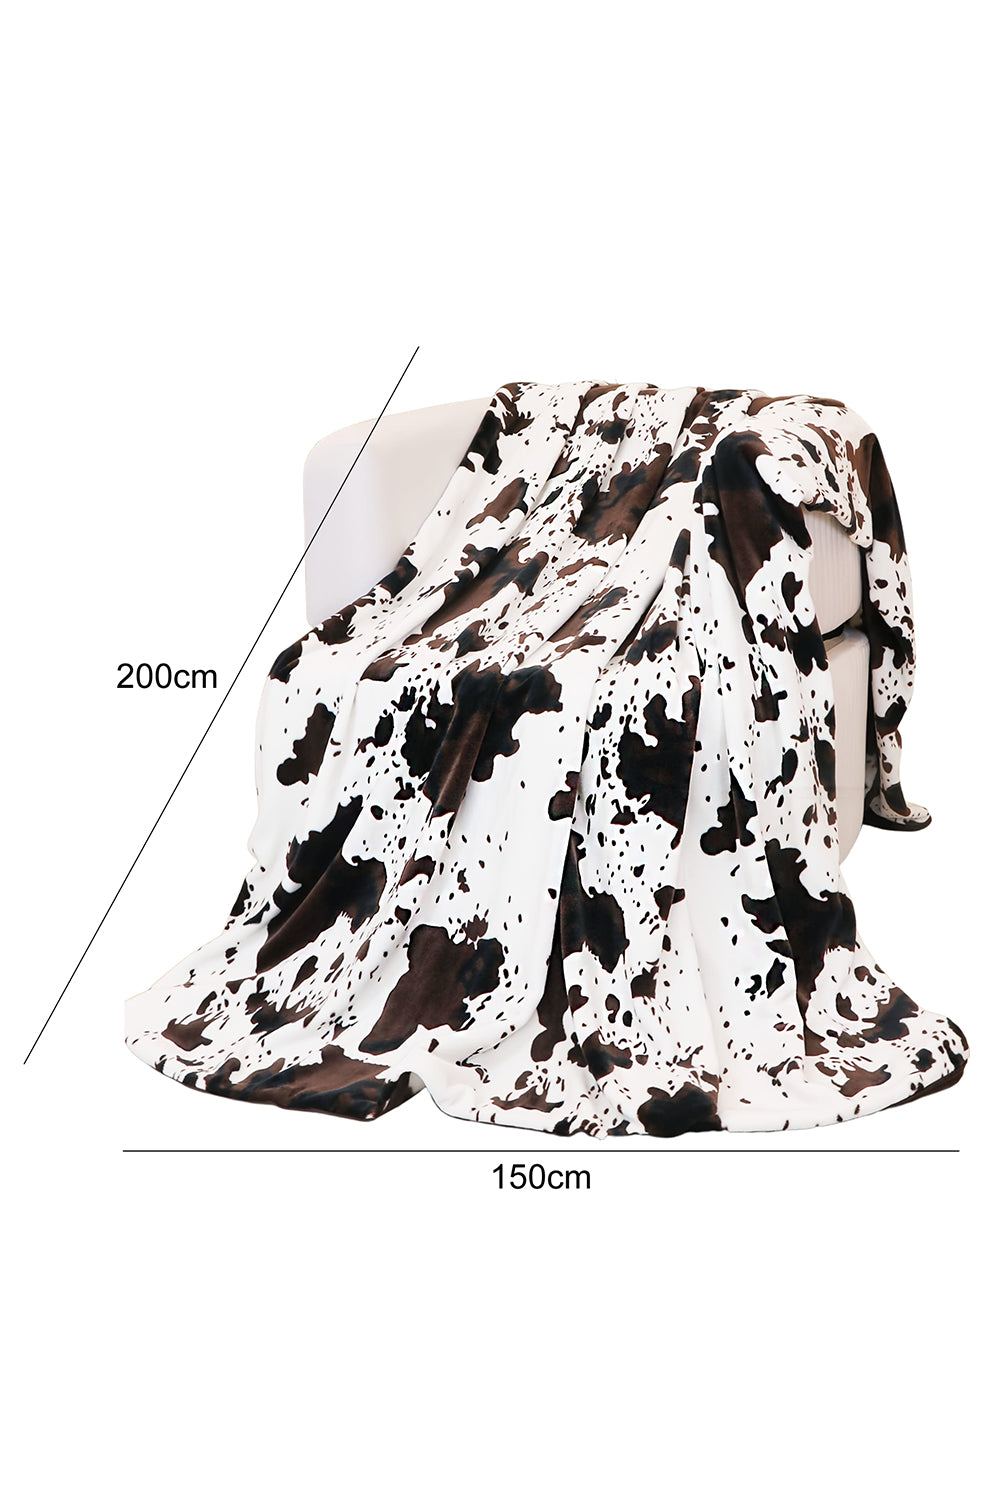 Multicolour Cow Spots Plush Blanket 150*200cm